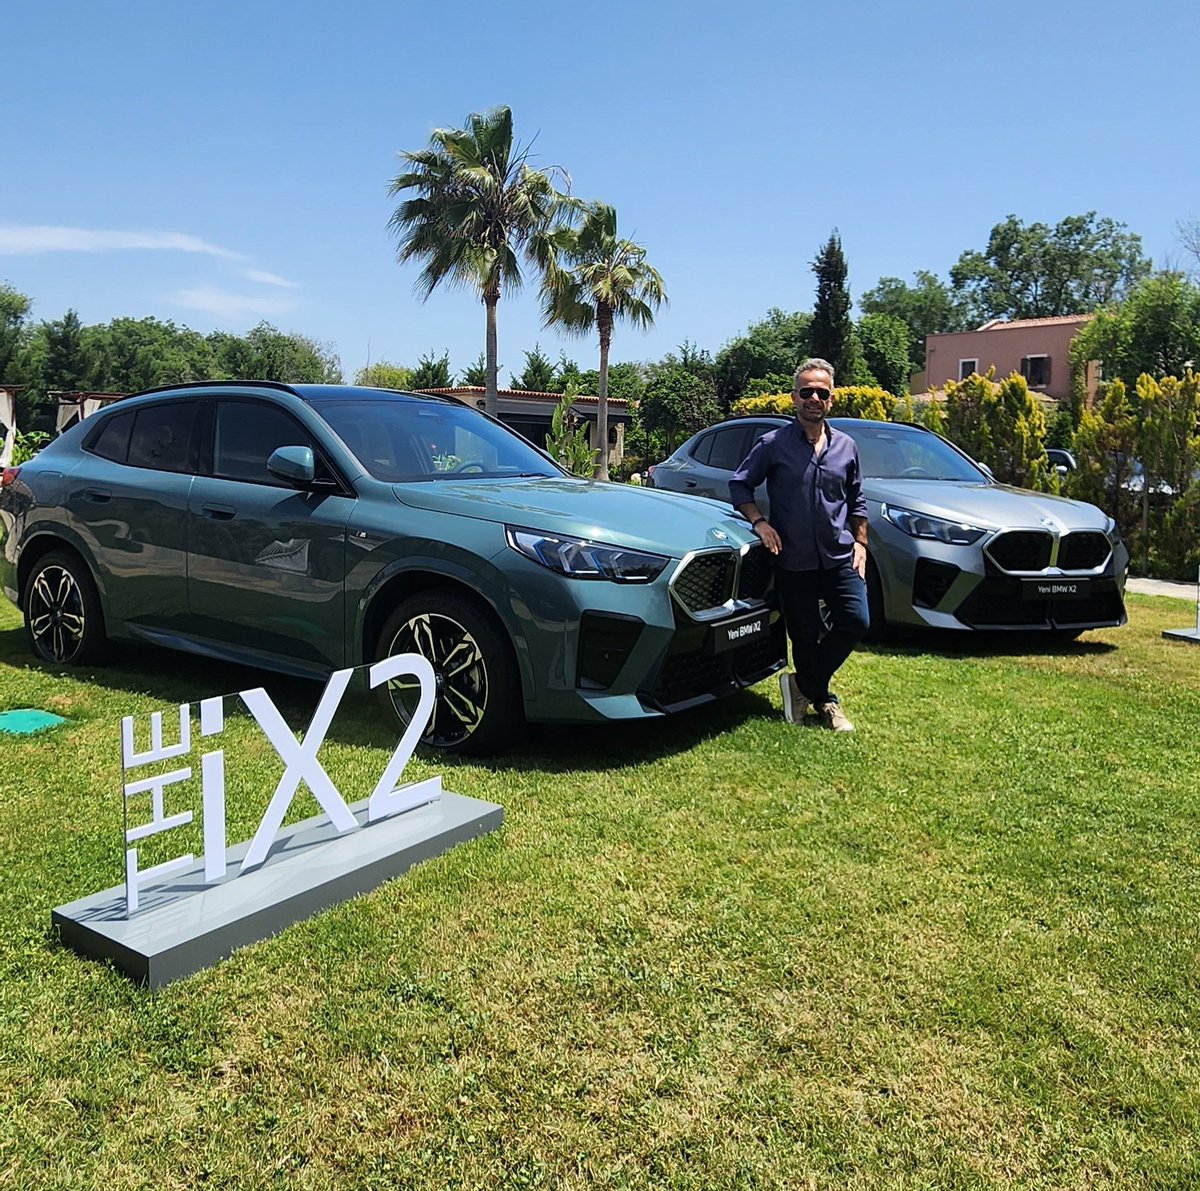 BMW iX2 ve Countryman elektrikli modellerinin, Türkiye’deki ilk gösterimi için Marmaris'teyim. #iX2 #Countryman